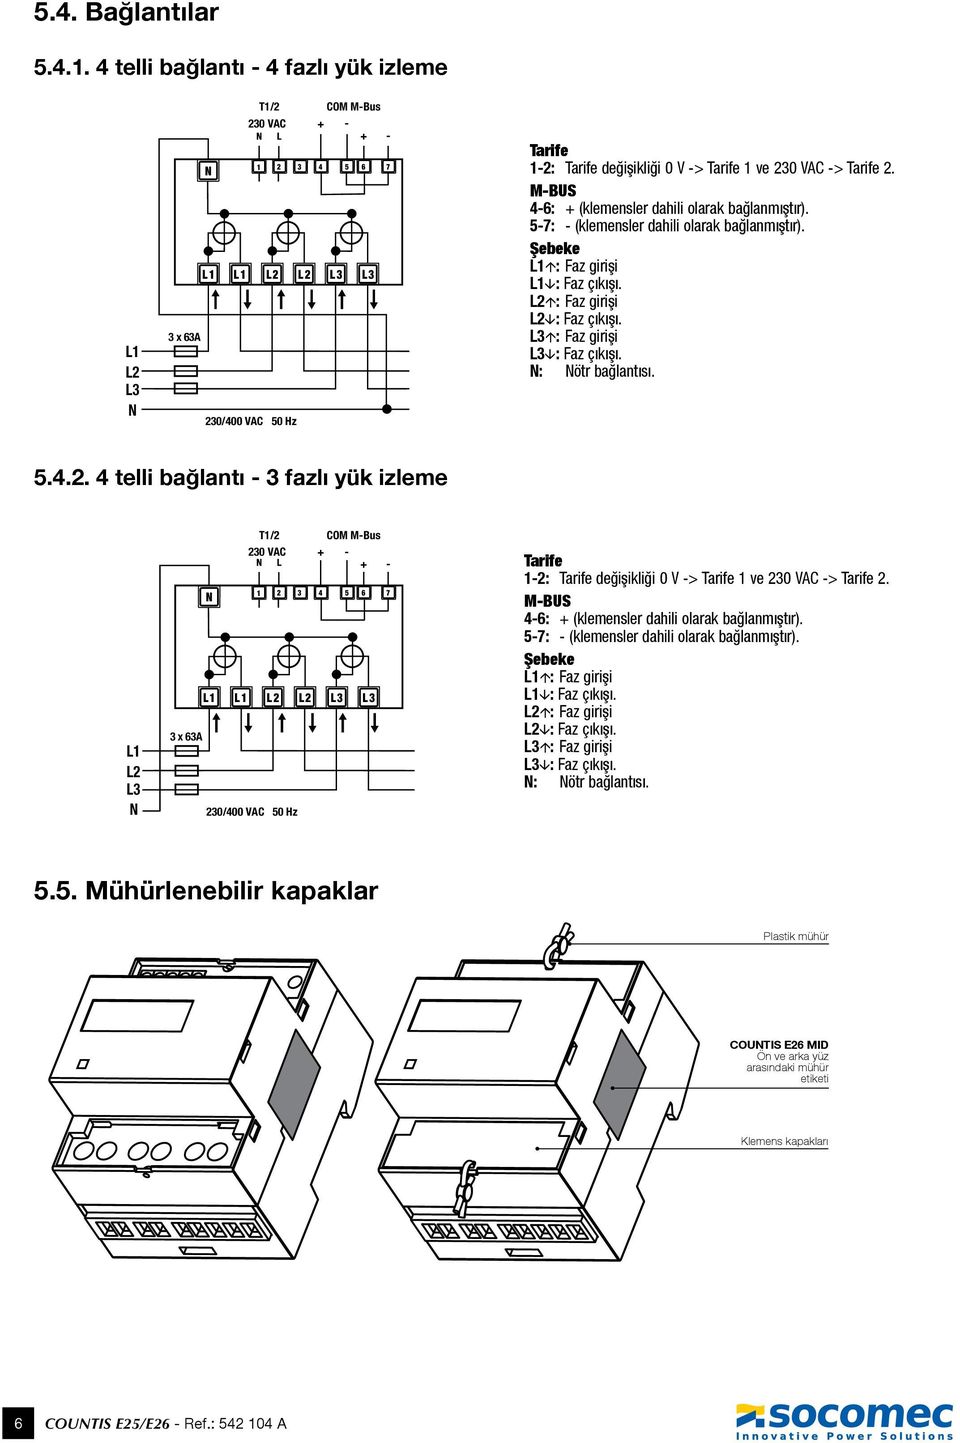 VAC 50 Hz 1 2 3 4 5 6 L1 L1 L2 L2 L3 L3 7 Tarife 1-2: Tarife değişikliği 0 V -> Tarife 1 ve 230 VAC -> Tarife 2. M-BUS 4-6: + (klemensler dahili olarak bağlanmıştır).